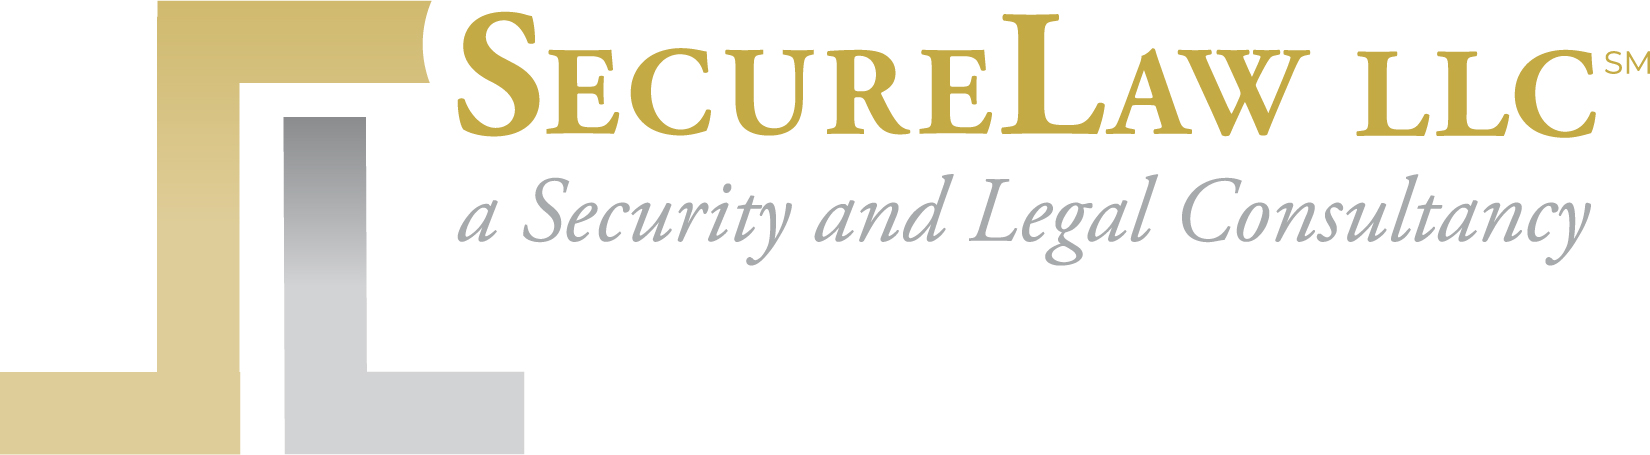 security-law-llc-logo.jpg